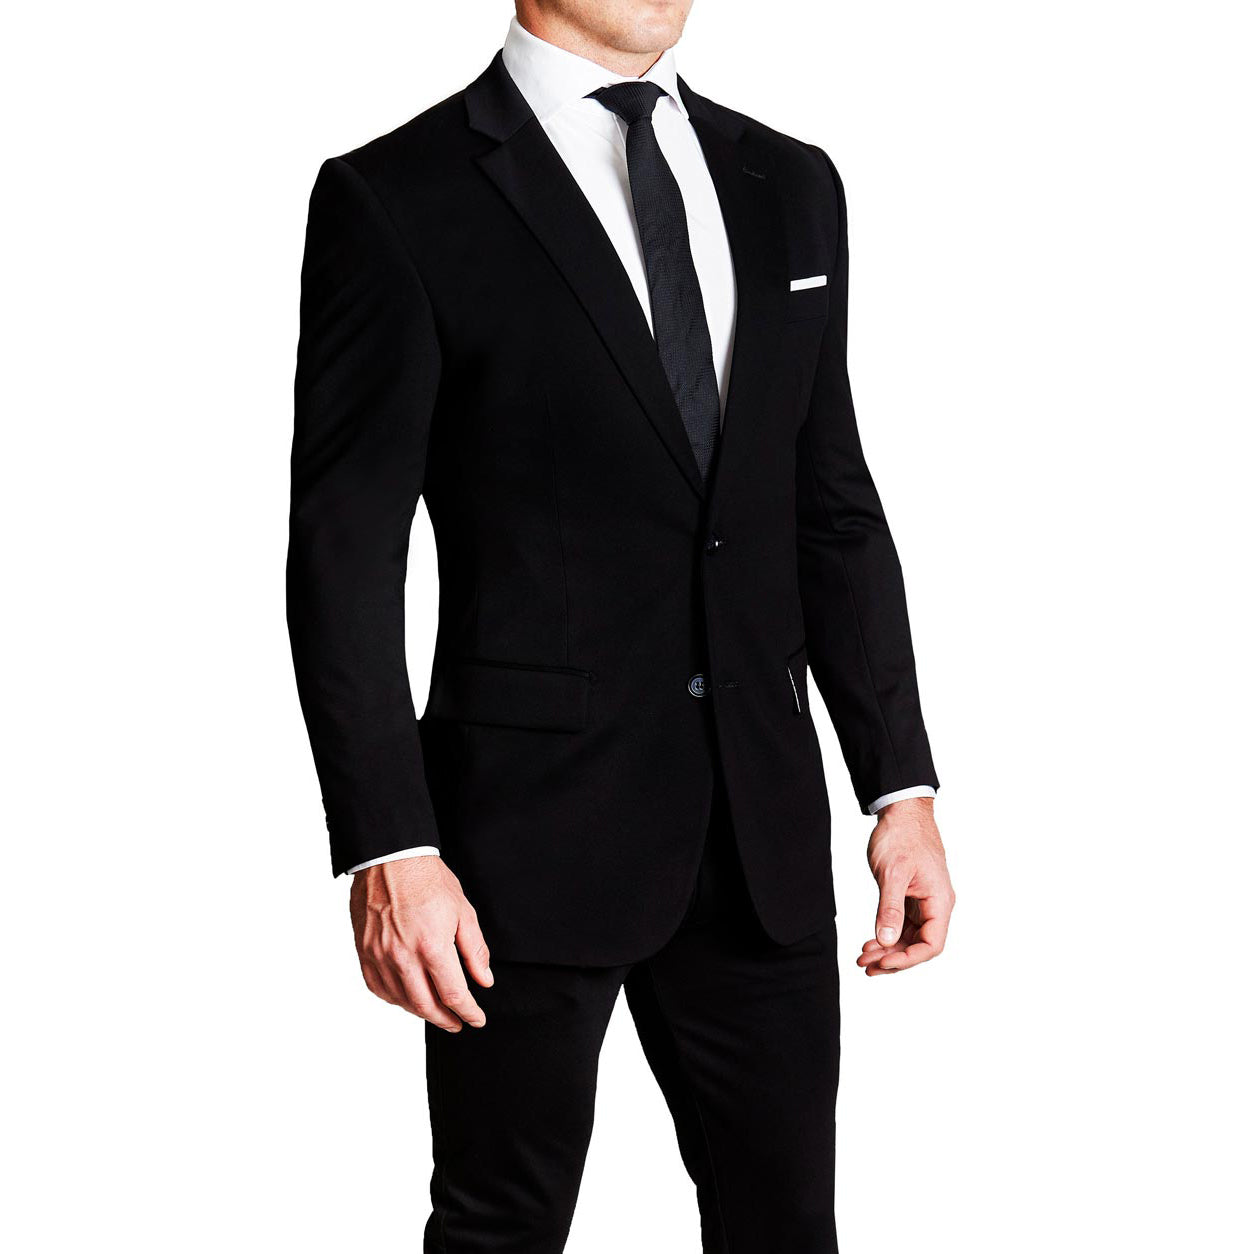  Men's Black Suits